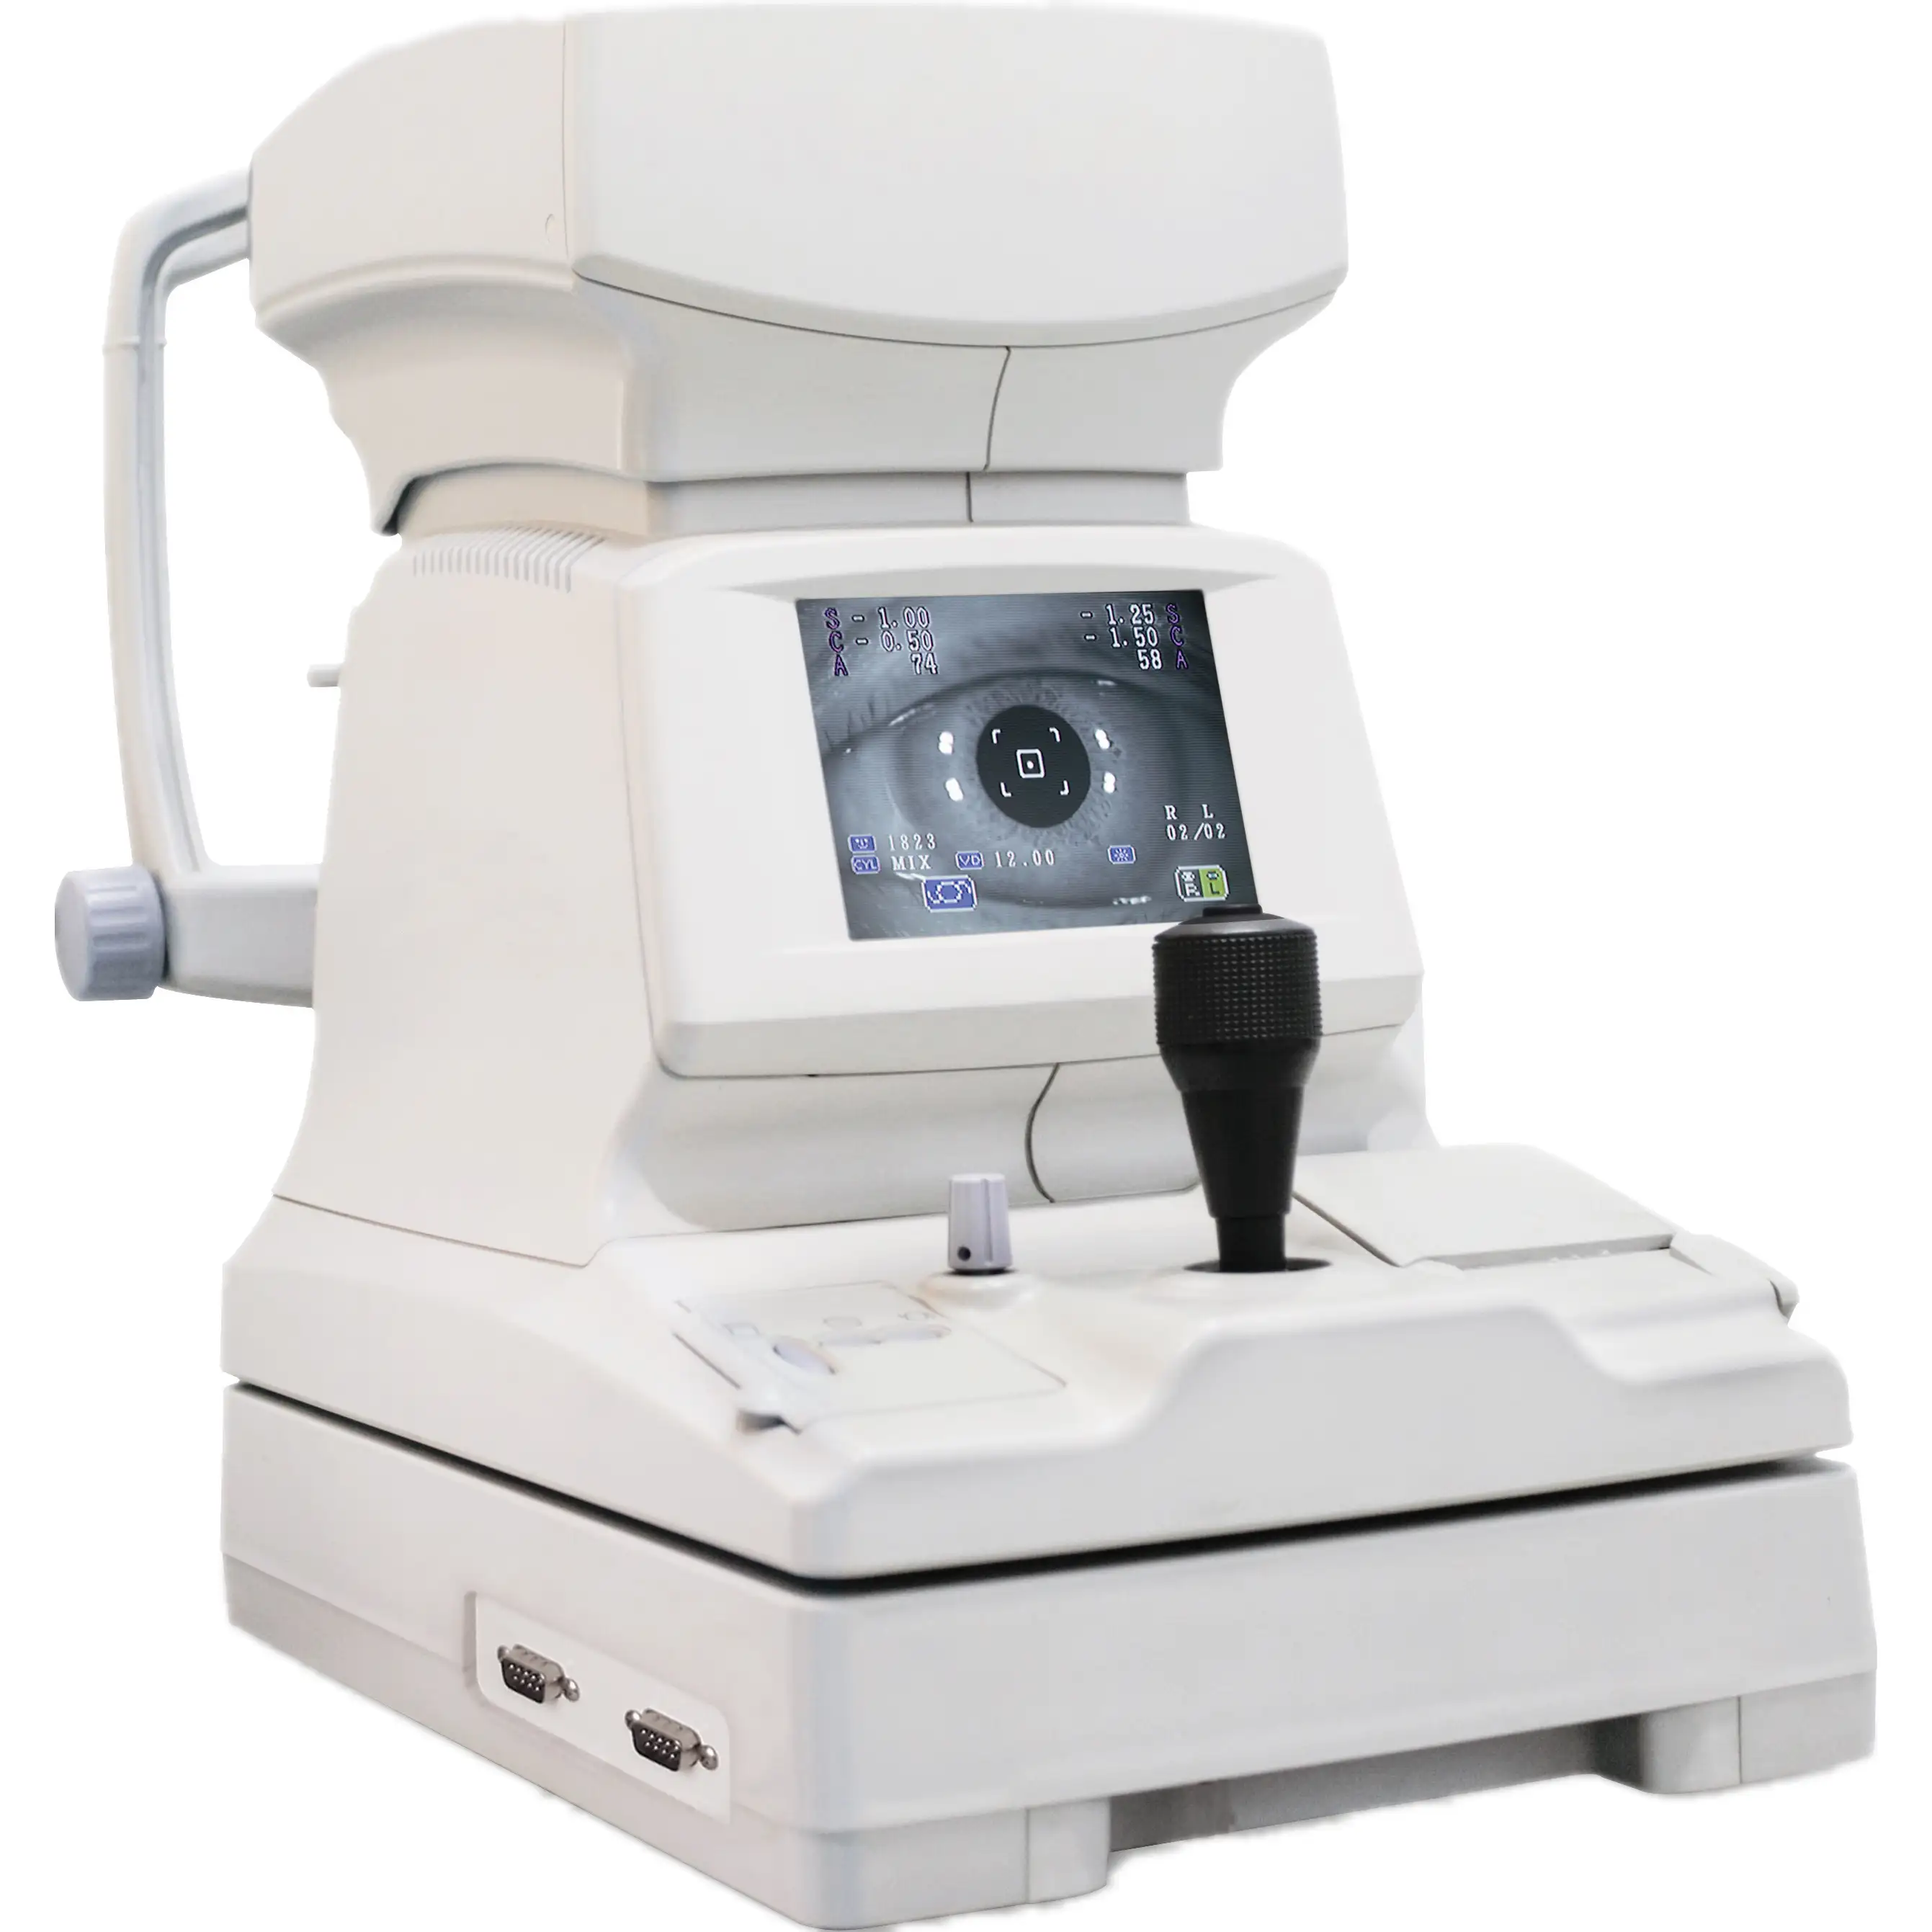 2021 di qualità popolare Digital Auto Rifrattometro con Keratometer per occhio Ottico esaminare strumento optometria attrezzature